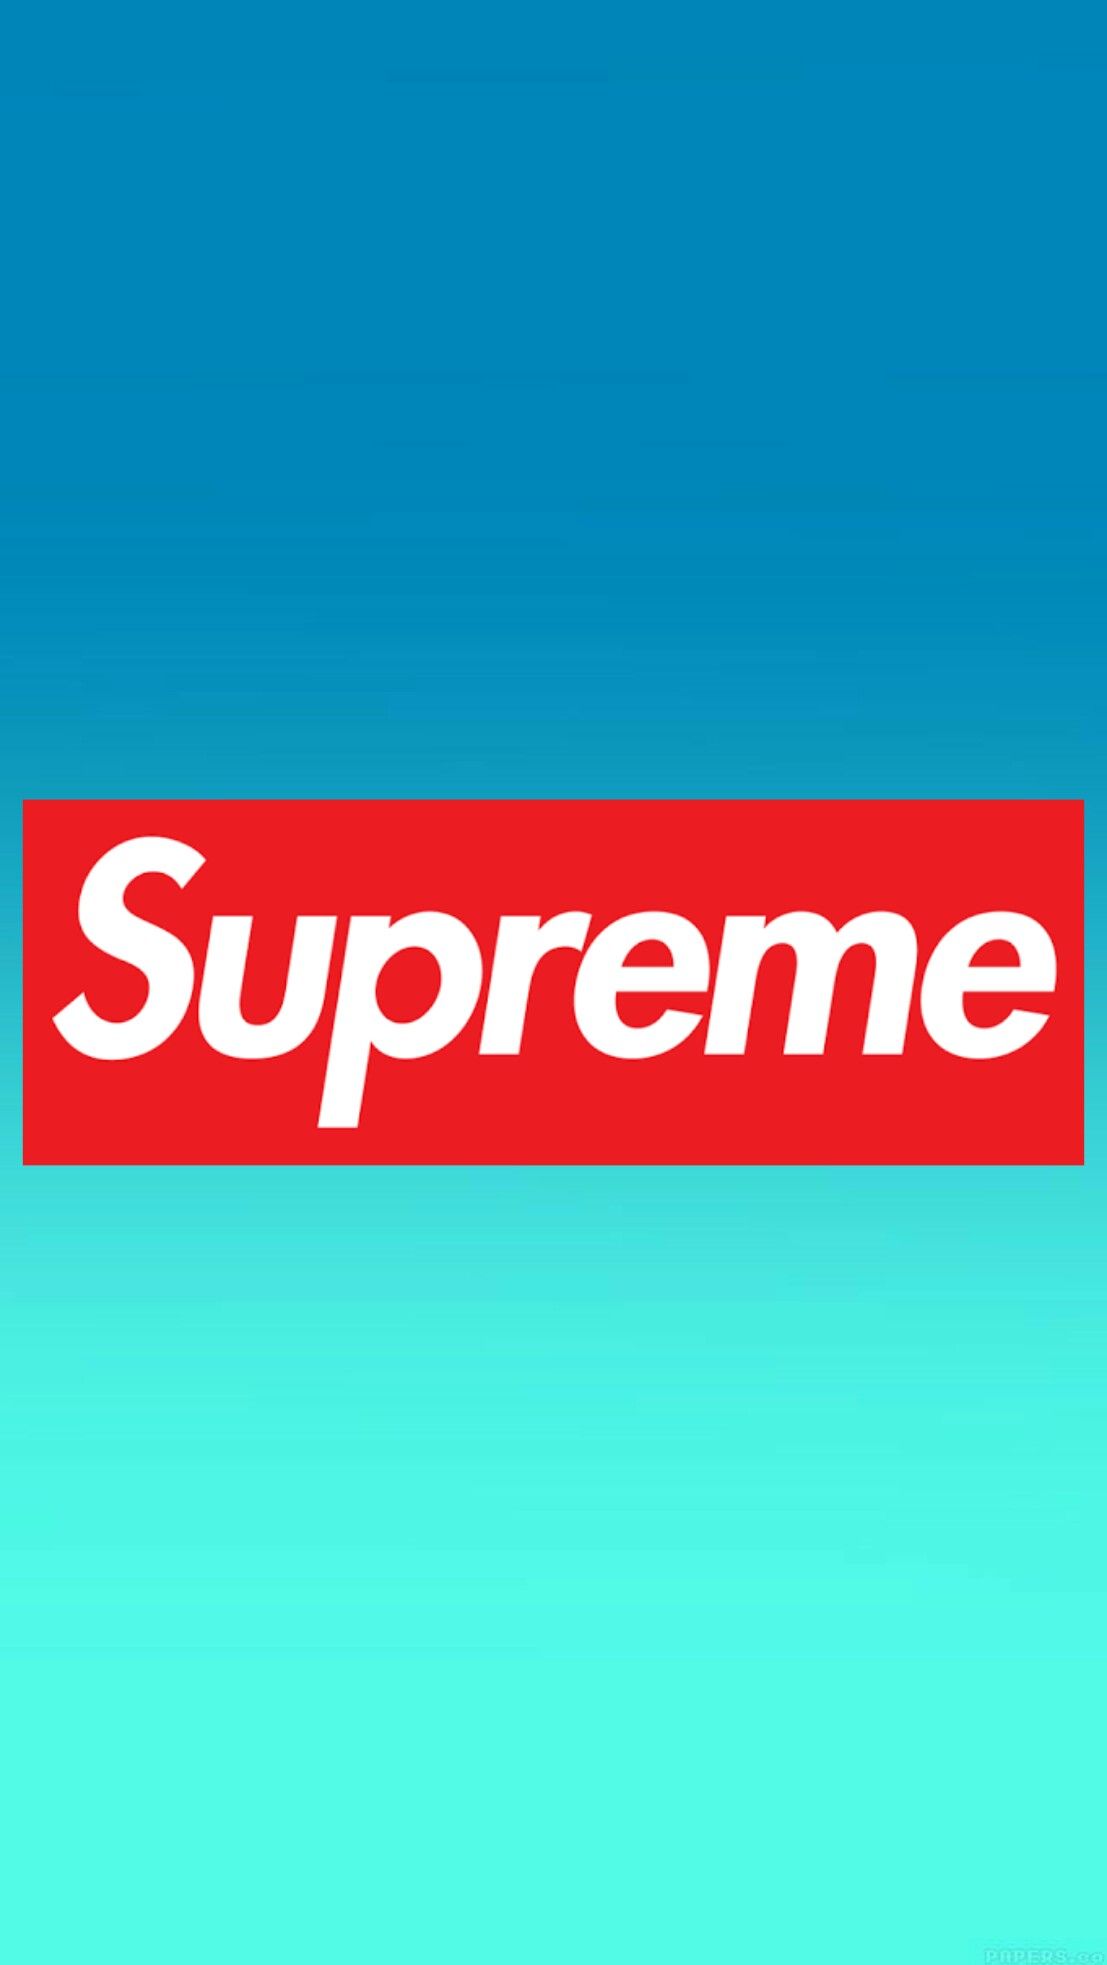 93 Supreme ideas  supreme, supreme wallpaper, supreme iphone wallpaper